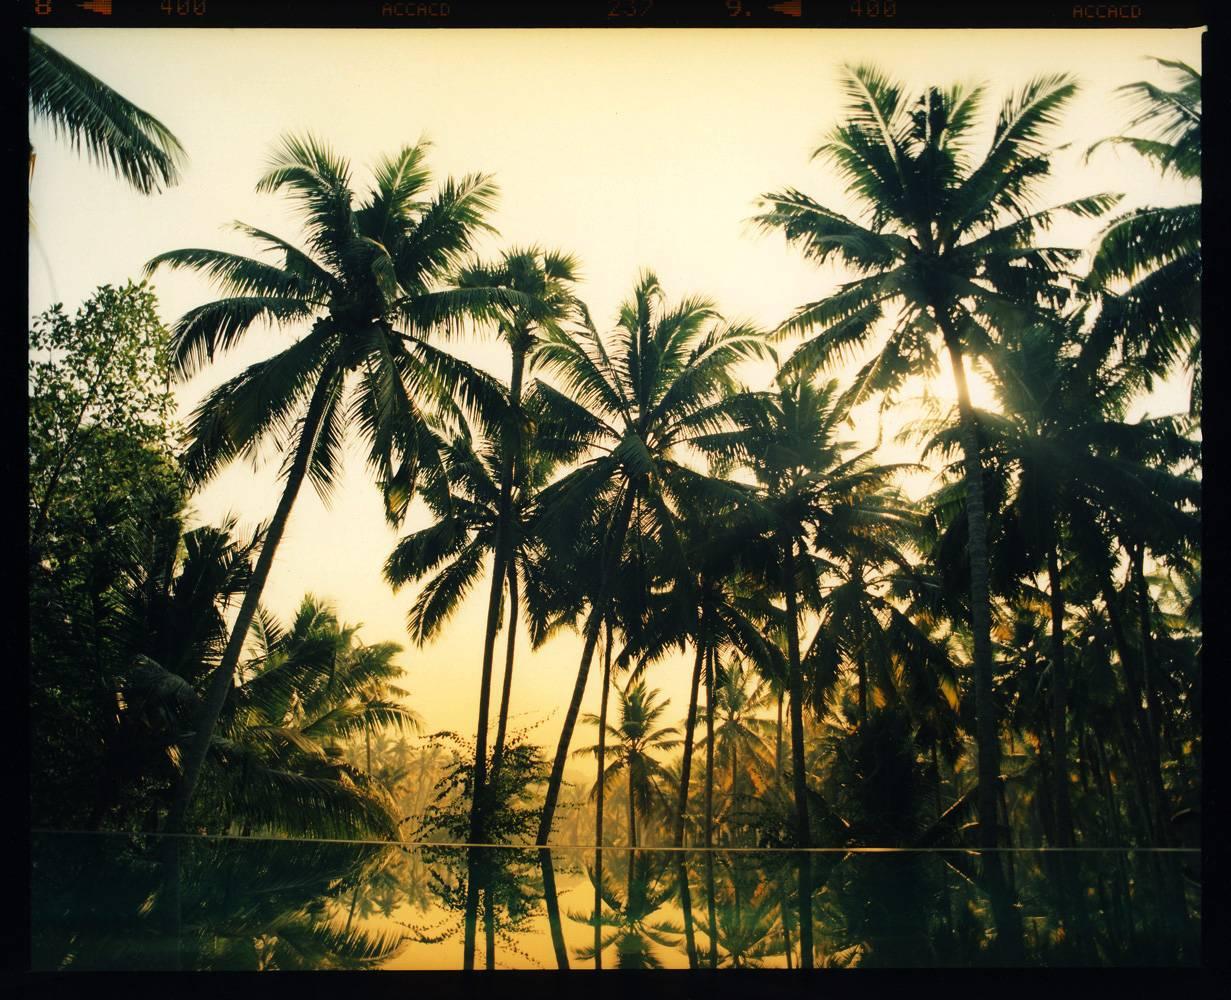 Color Photograph Richard Heeps - Vetyver Pool, Poovar, Kerala - Photographie couleur indienne à imprimé de palmier tropical